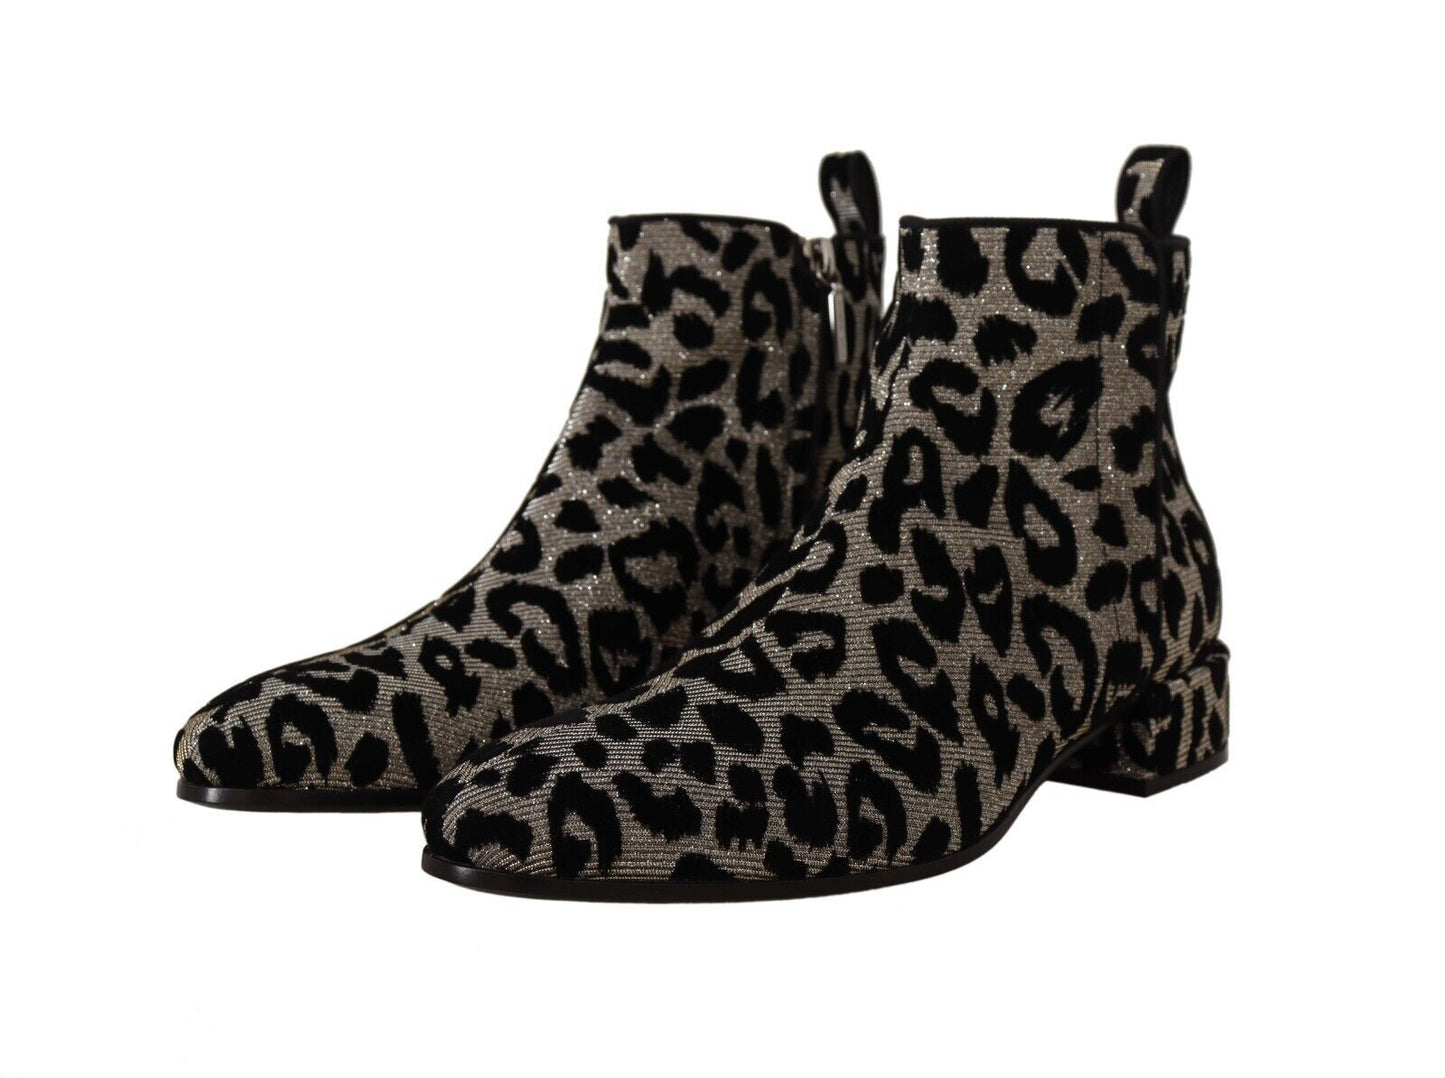 Elegant Leopard Print Short Boots